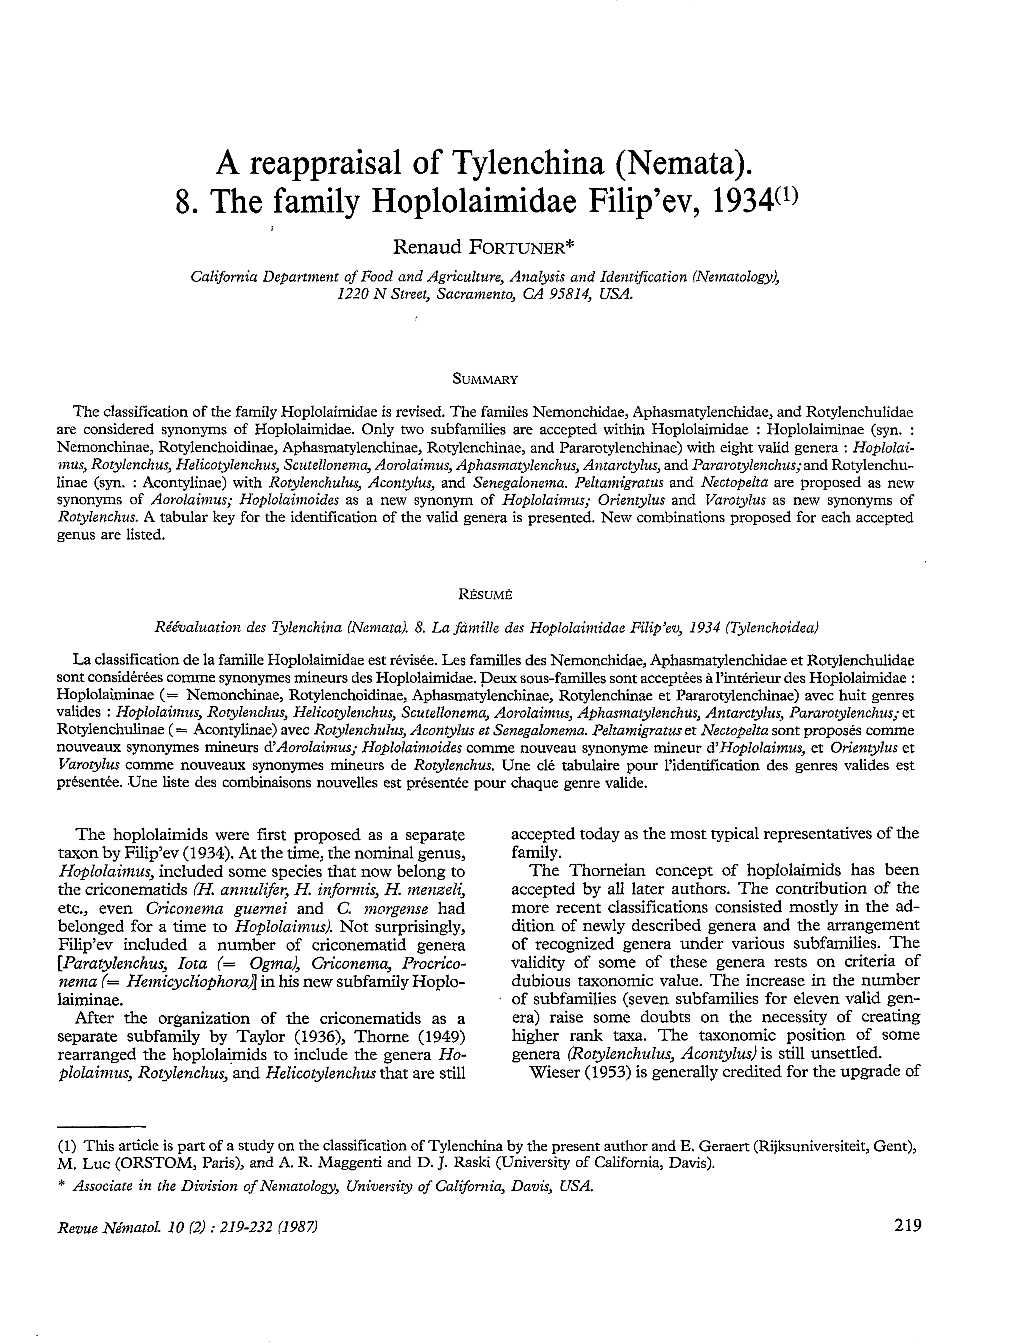 A Reappraisal of Tylenchina (Nemata) : 8. the Family Hoplolaimidae Filip